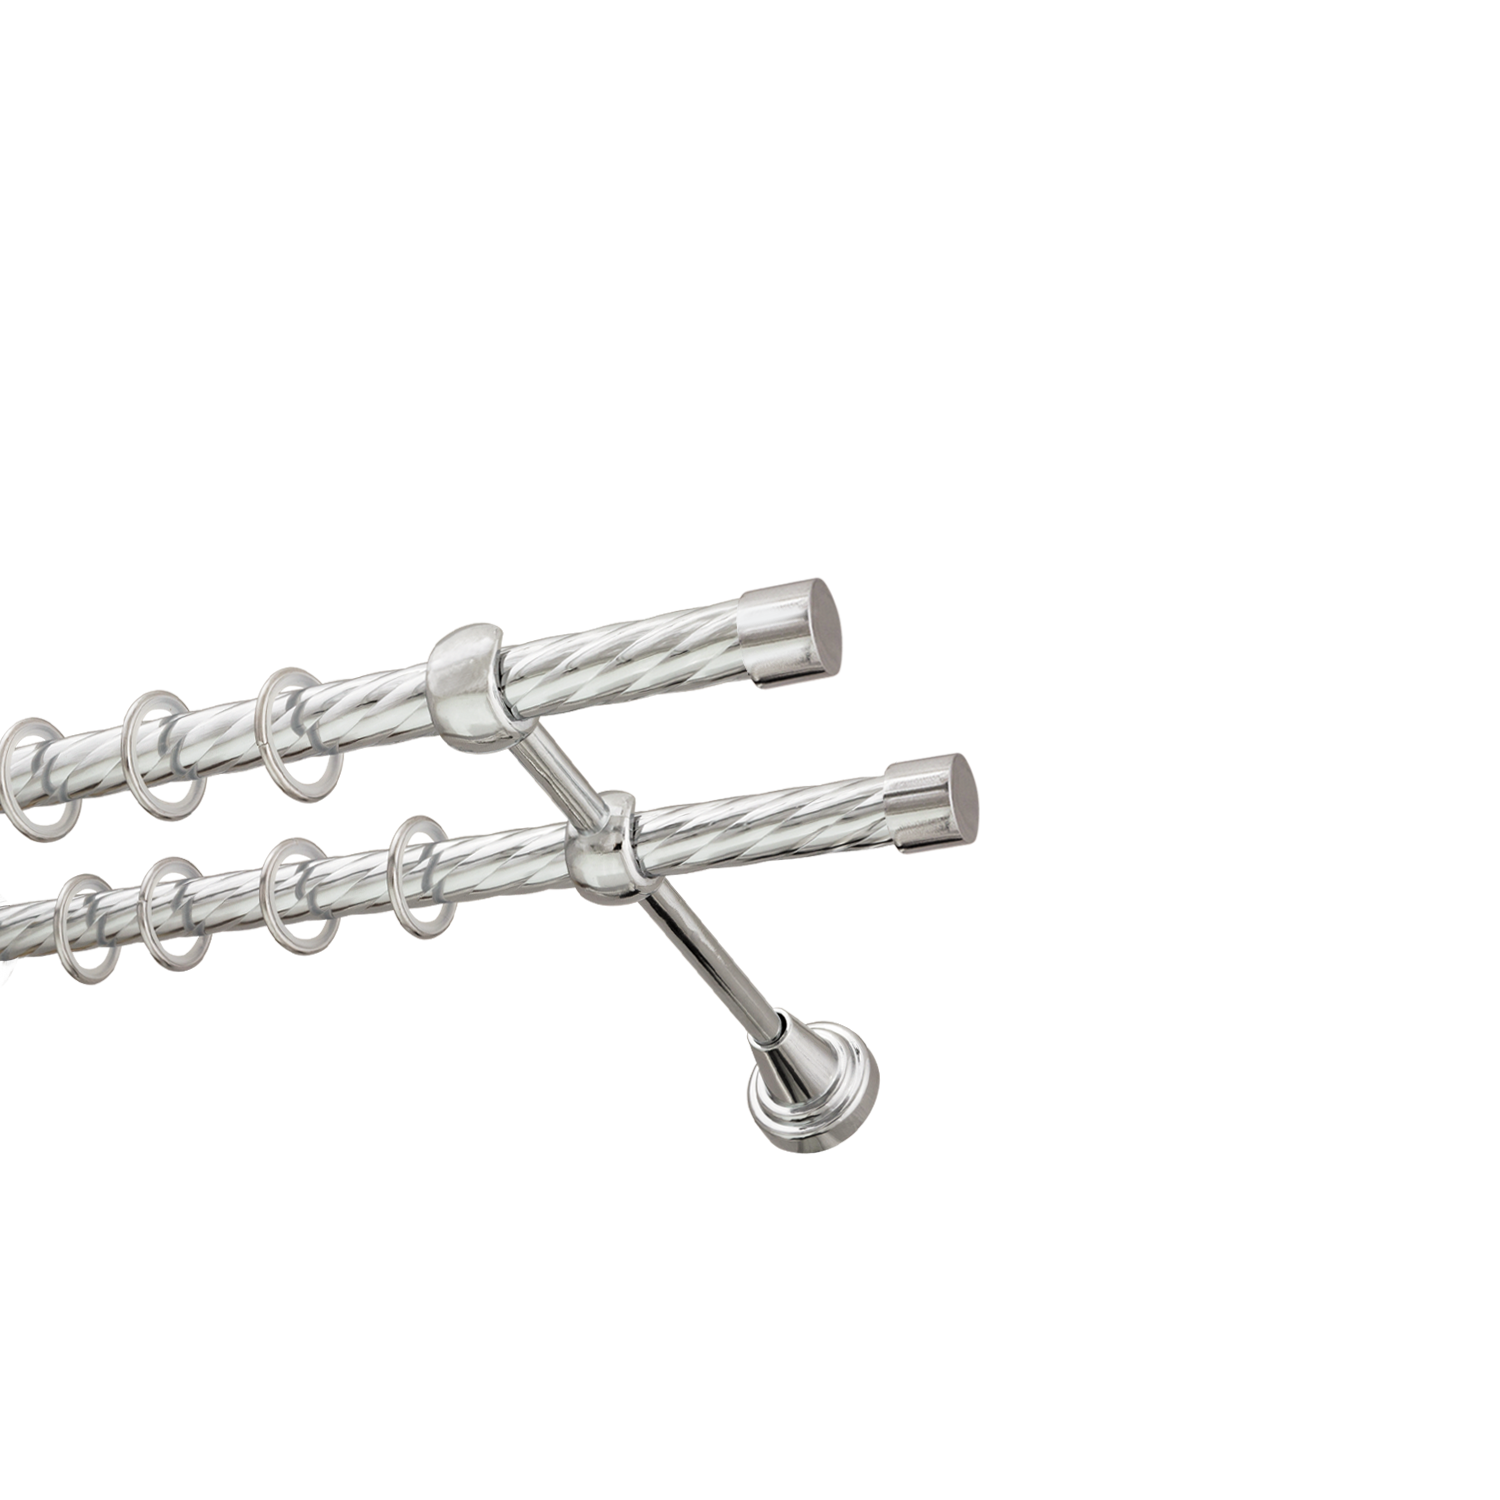 Металлический карниз для штор Заглушка, двухрядный 16/16 мм, серебро, витая штанга, длина 180 см